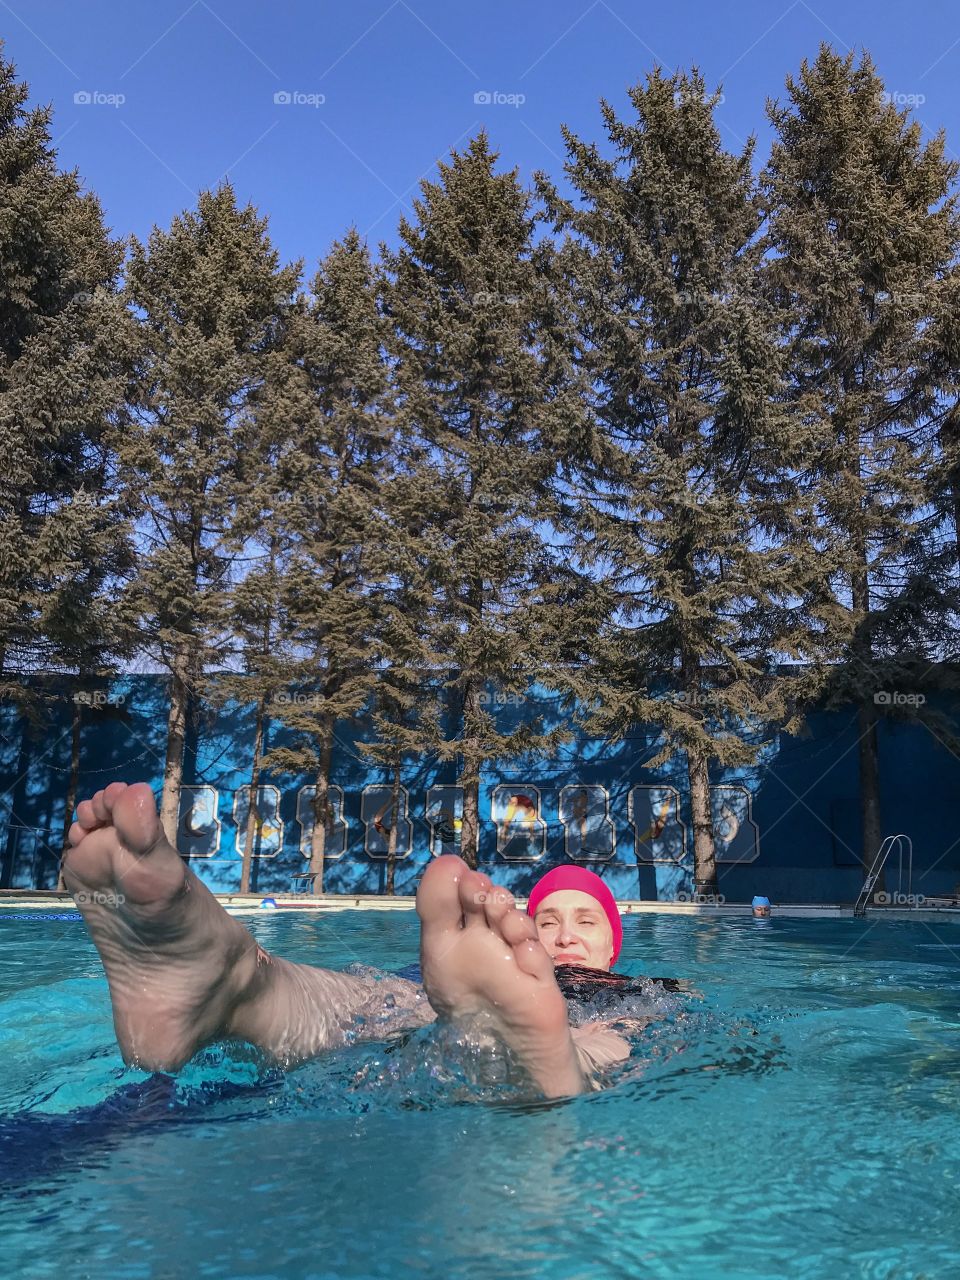 Лучший отдых зимний купаться под открытым небом в тёплом бассейне с видом на огромные зеленые ели